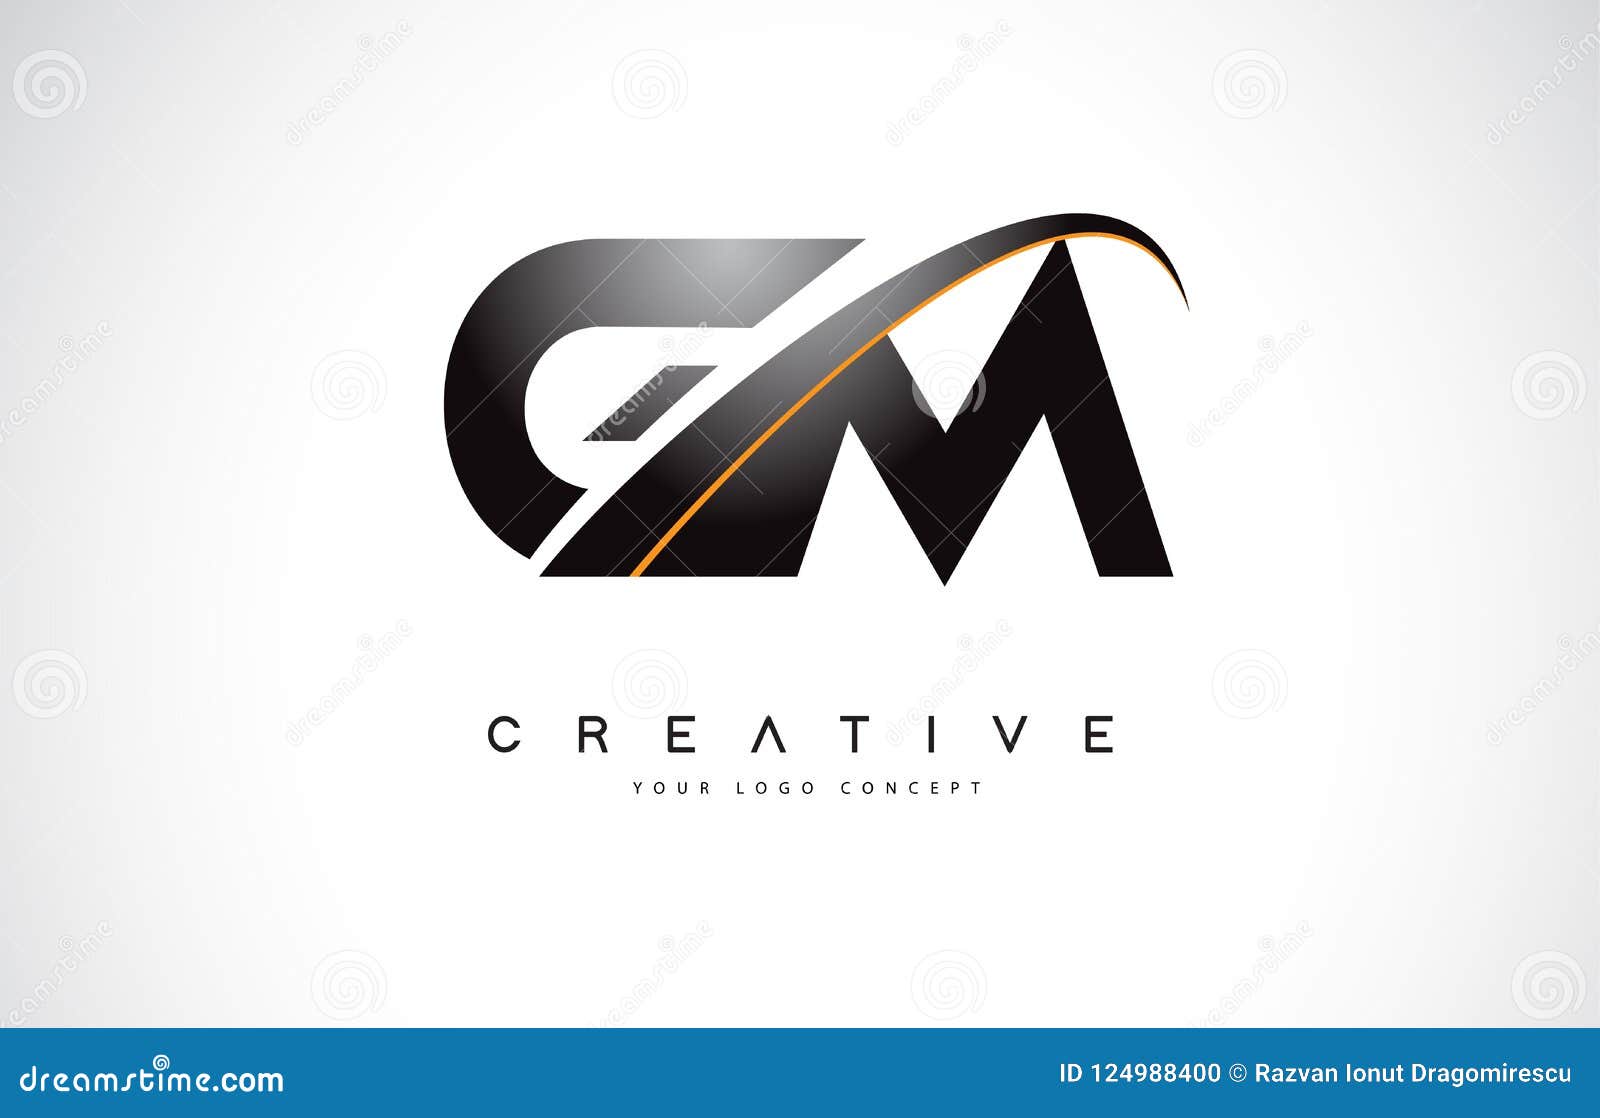 vector gm logo